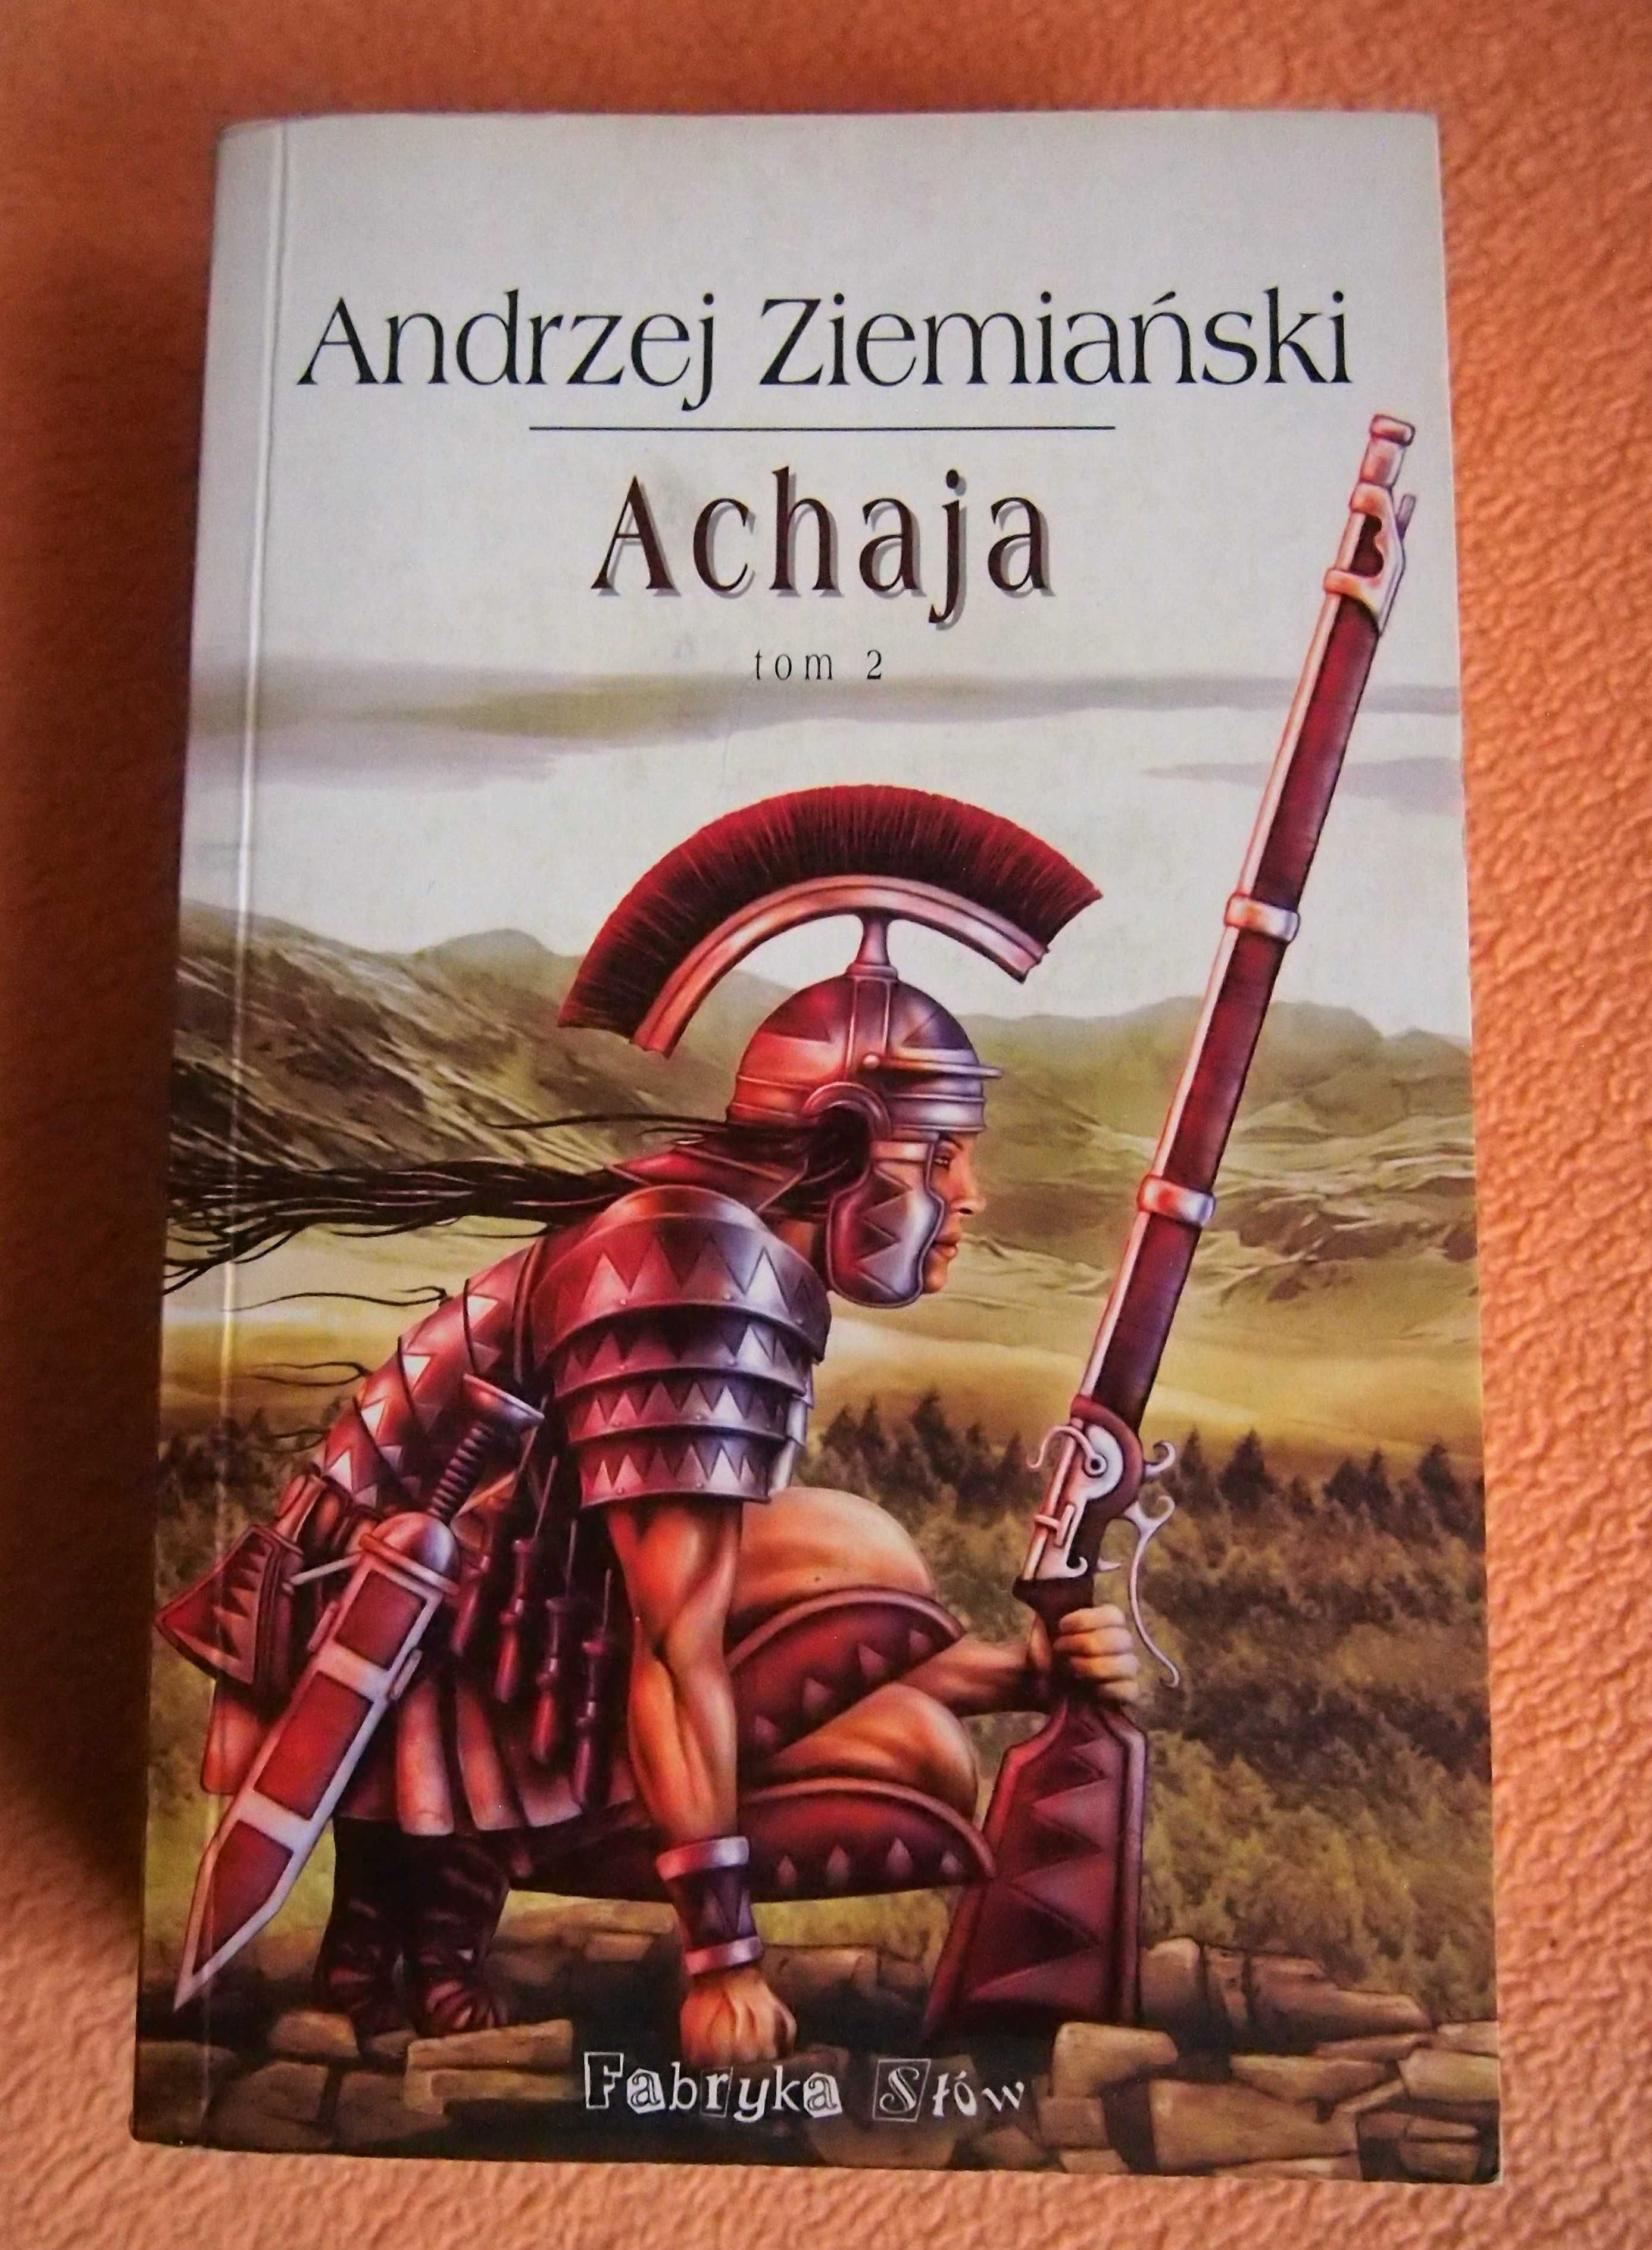 Andrzej Ziemiański, Achaja tomy 1-3, pierwsze wydania